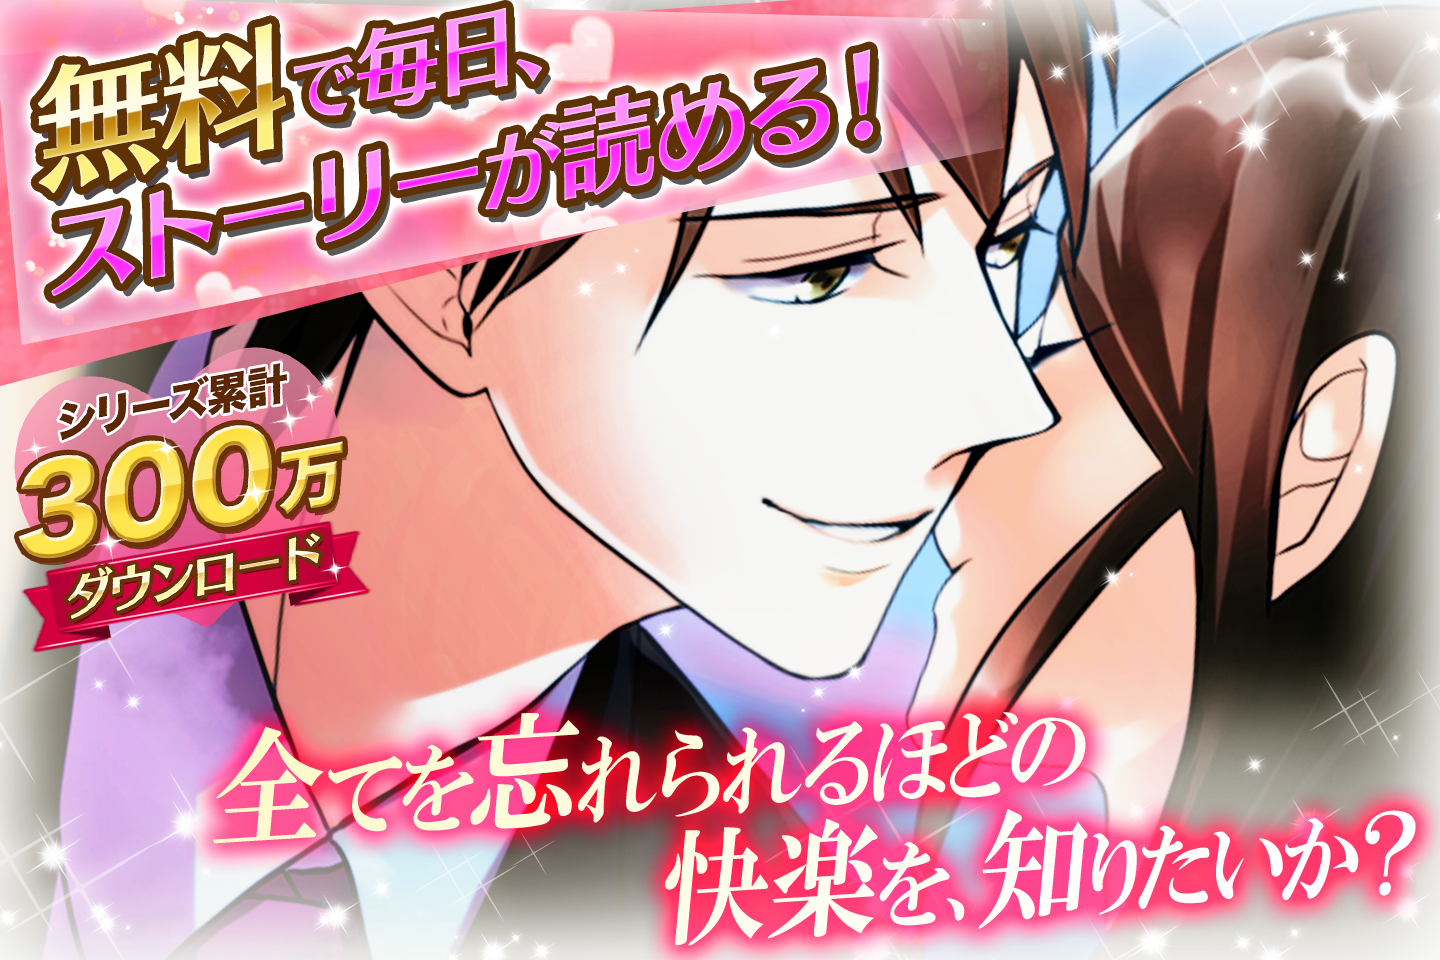 Screenshot 1 of Engano do noivo ◆ Popular jogo de amor grátis para mulheres! Casada com um Príncipe Bonito ~Amor Verdadeiro e o Rosto Secreto~ 1.2.0